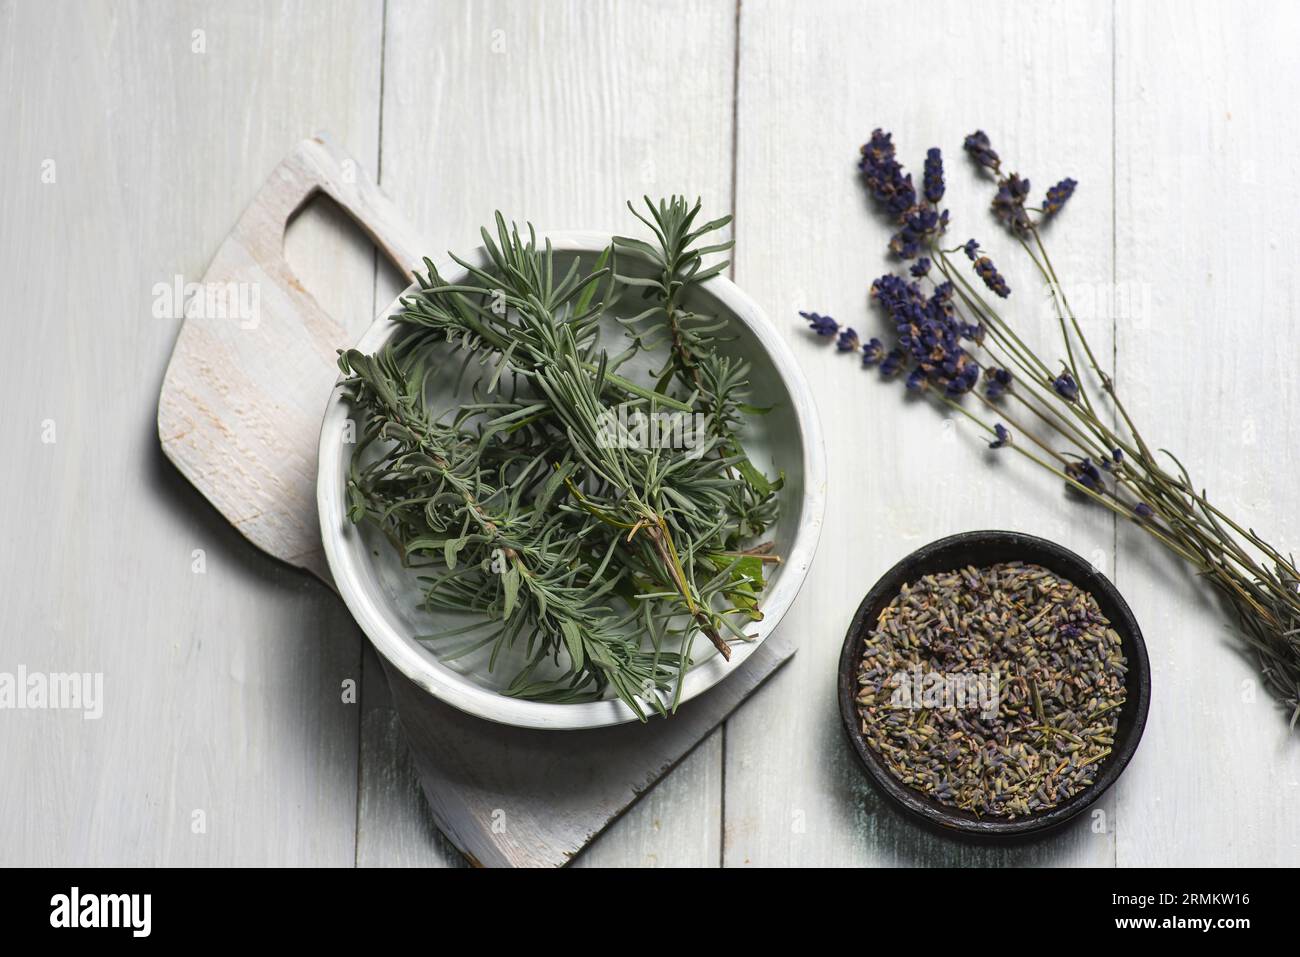 Herstellung von Blättern und Blüten der duftenden Lavendelpflanze zur Anwendung in Kosmetik, Alternativmedizin, Aromatherapie und Ernährung. Auf einem weißen Arbeitsauftrag Stockfoto